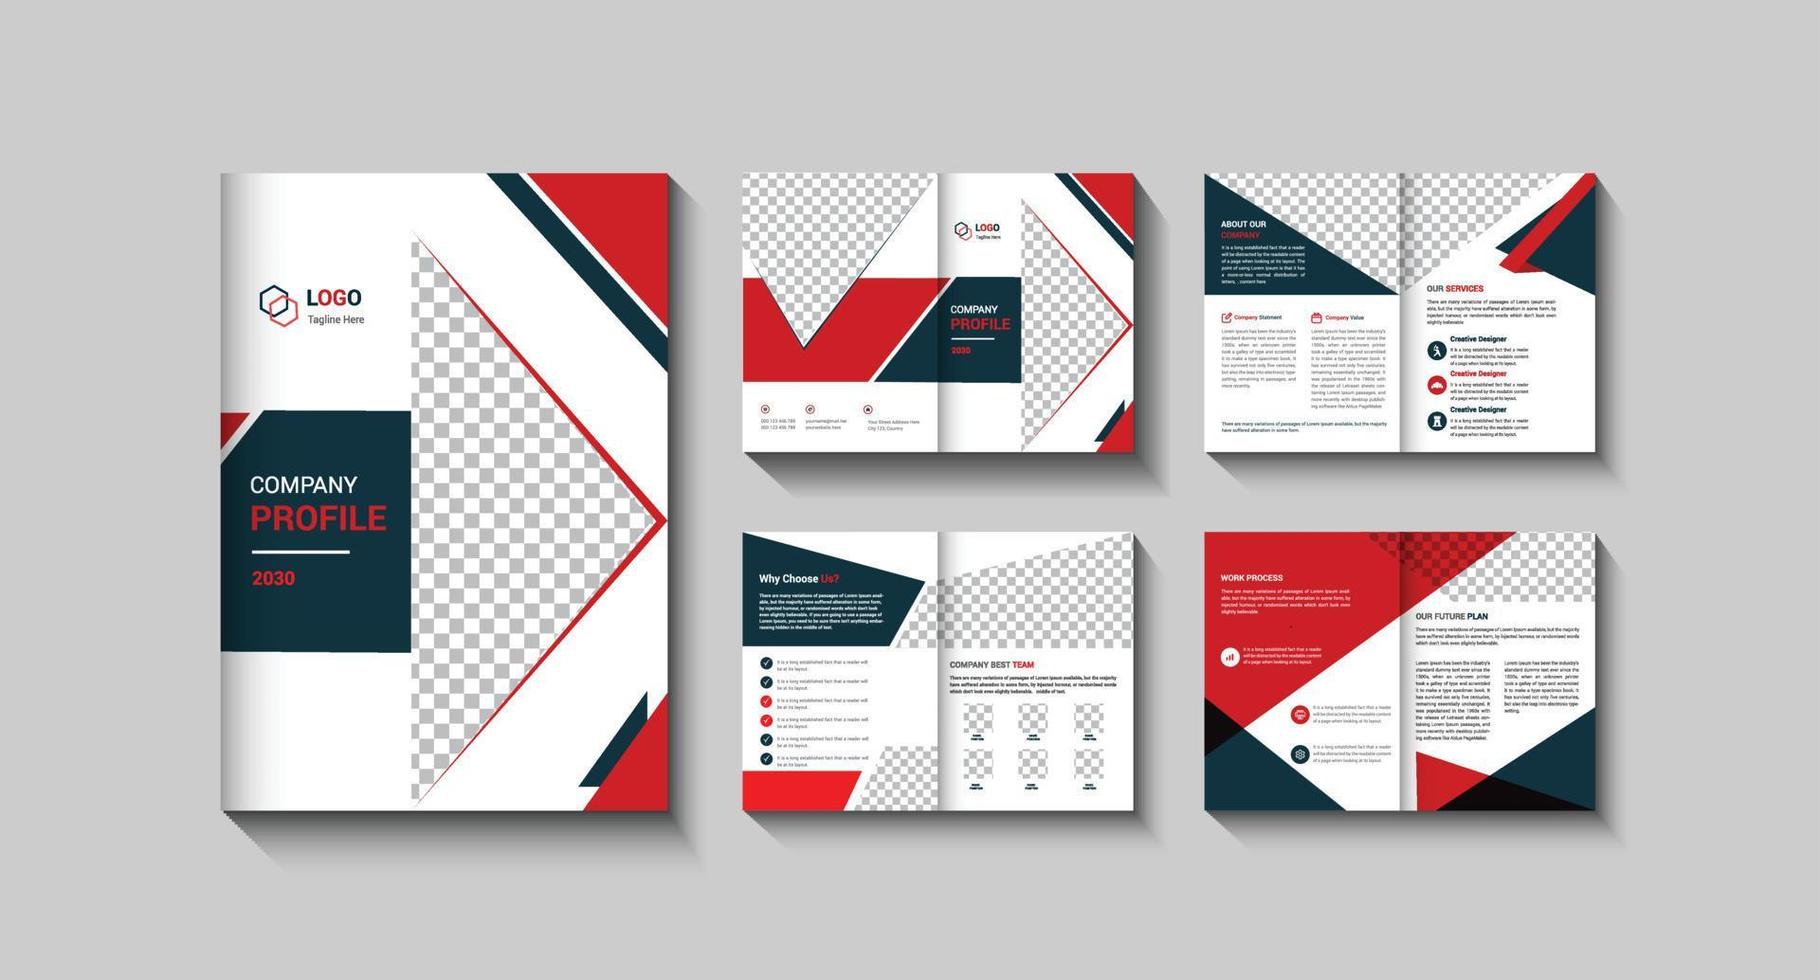 Company Profile Brochure Template Design vector